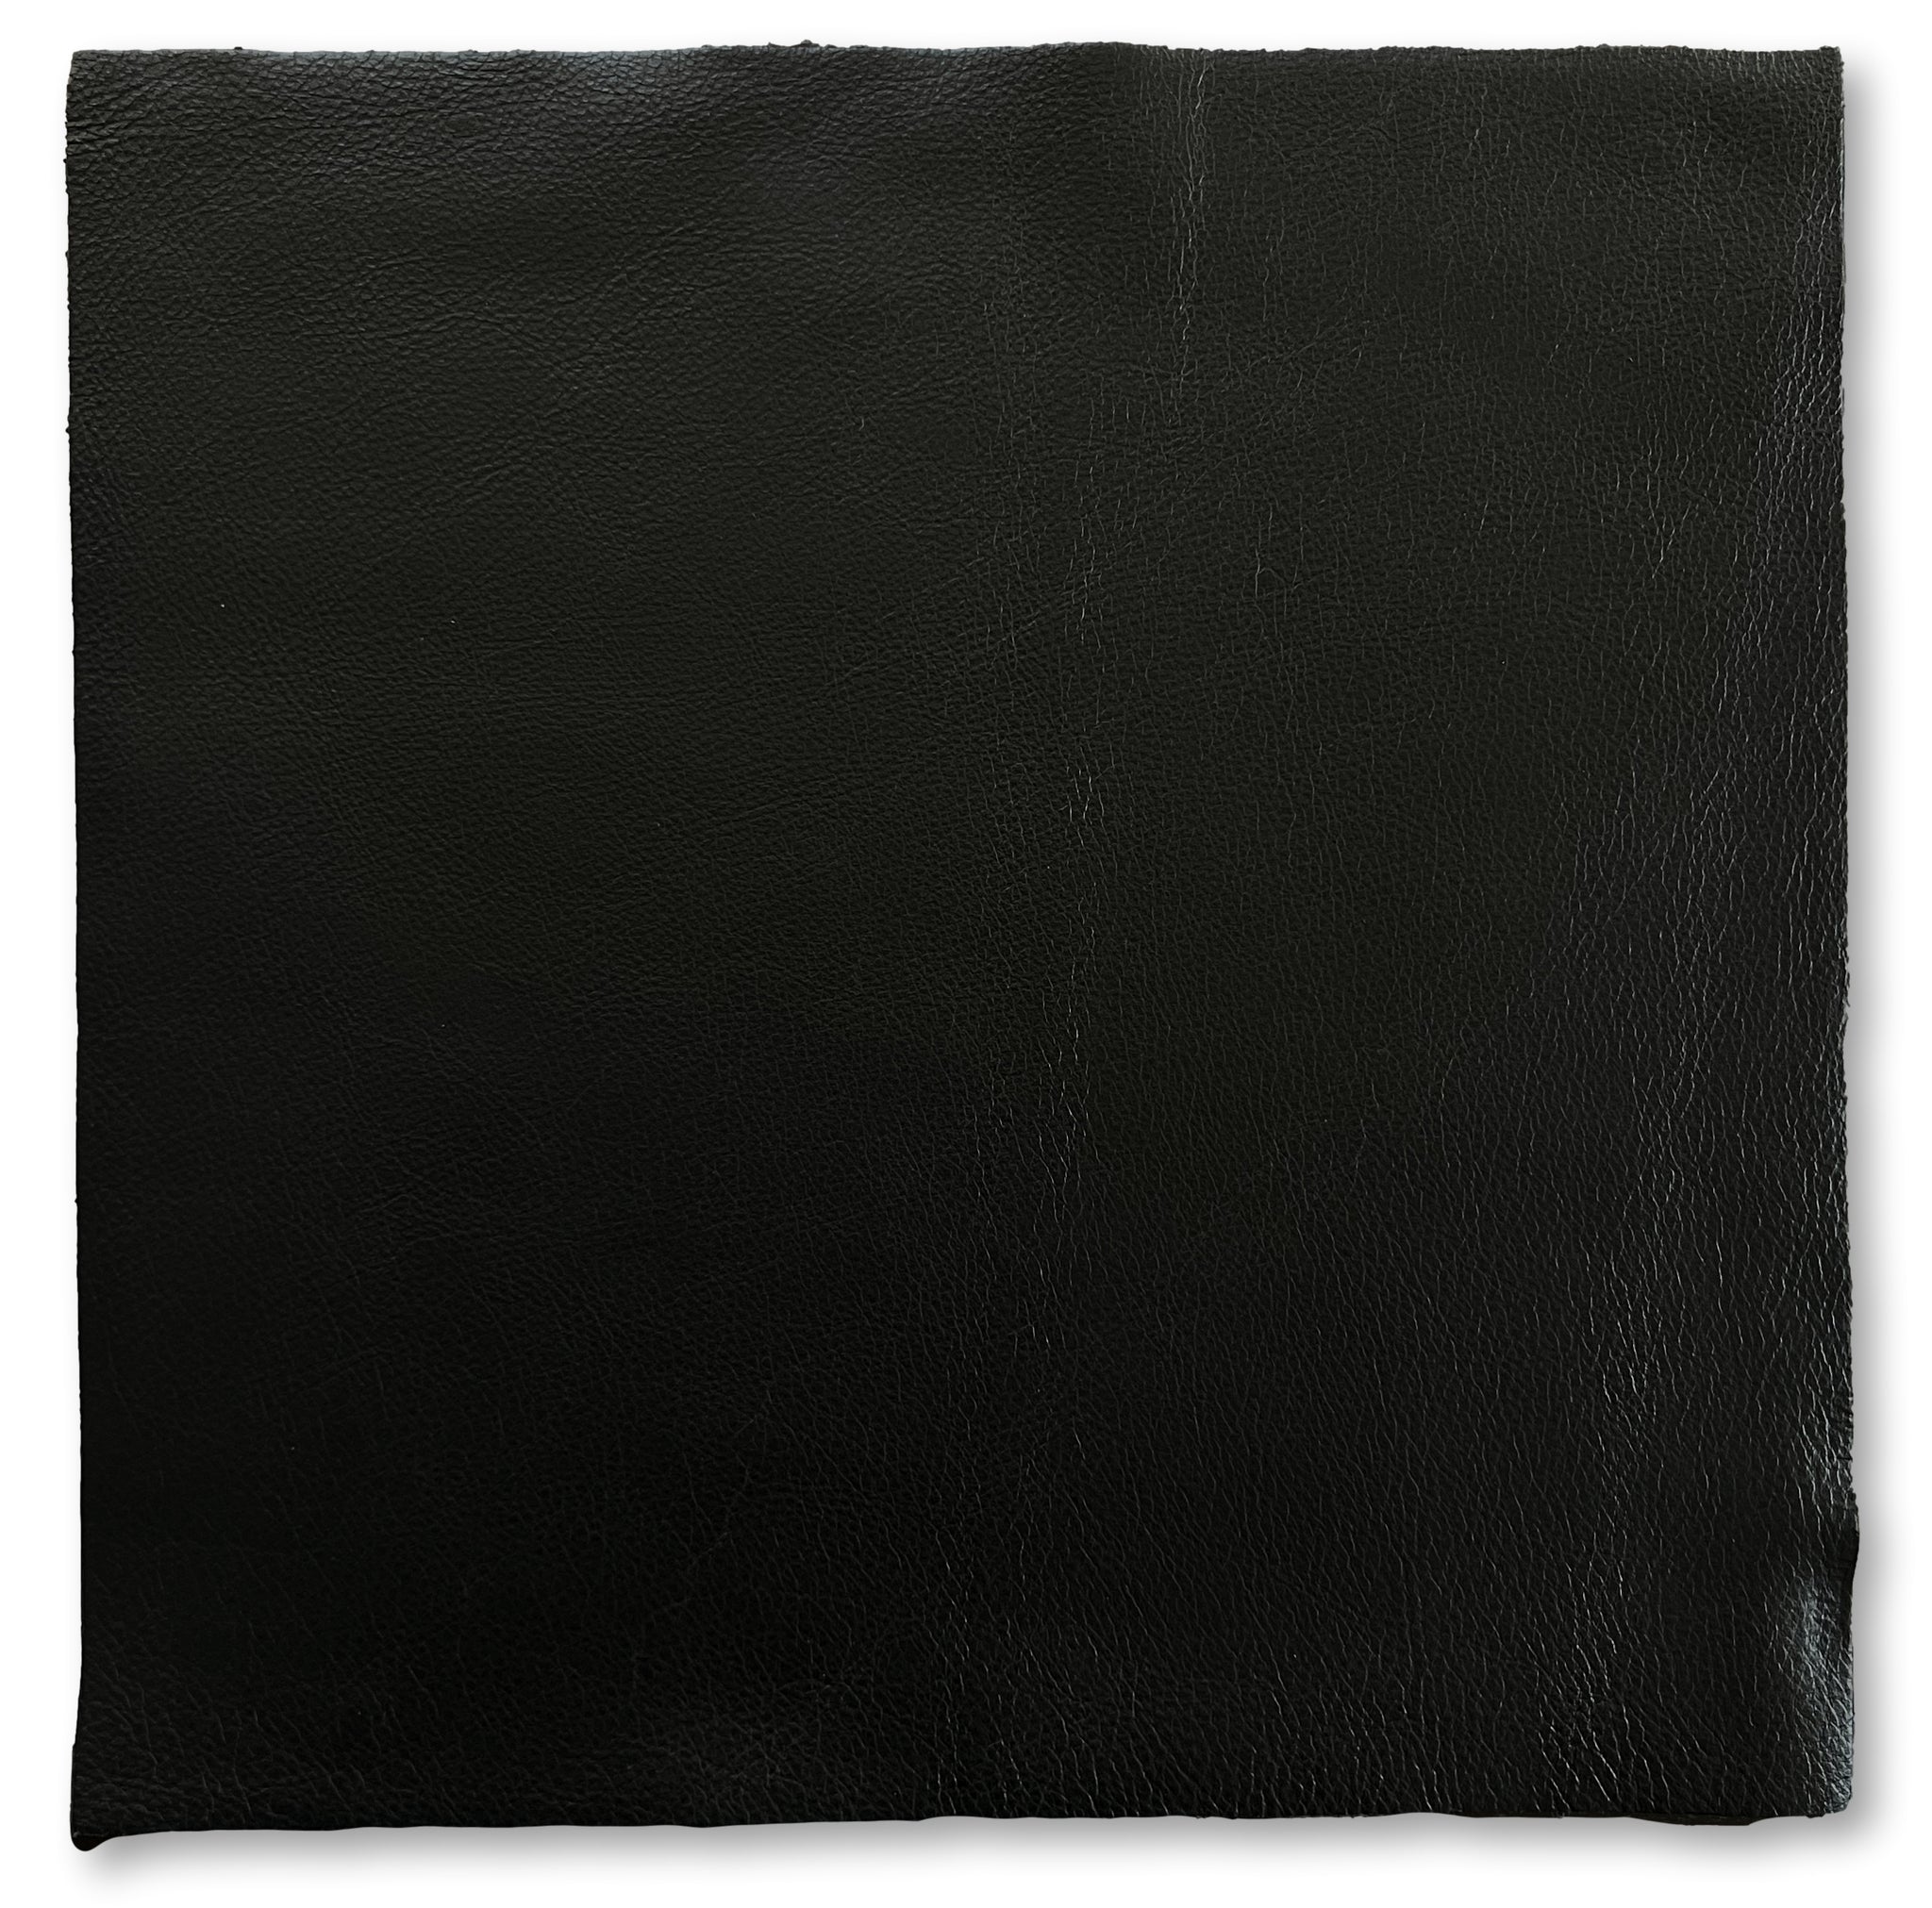 Black Natural Grain Cowhide Leather: 12" x 12" Pre-Cut Squares